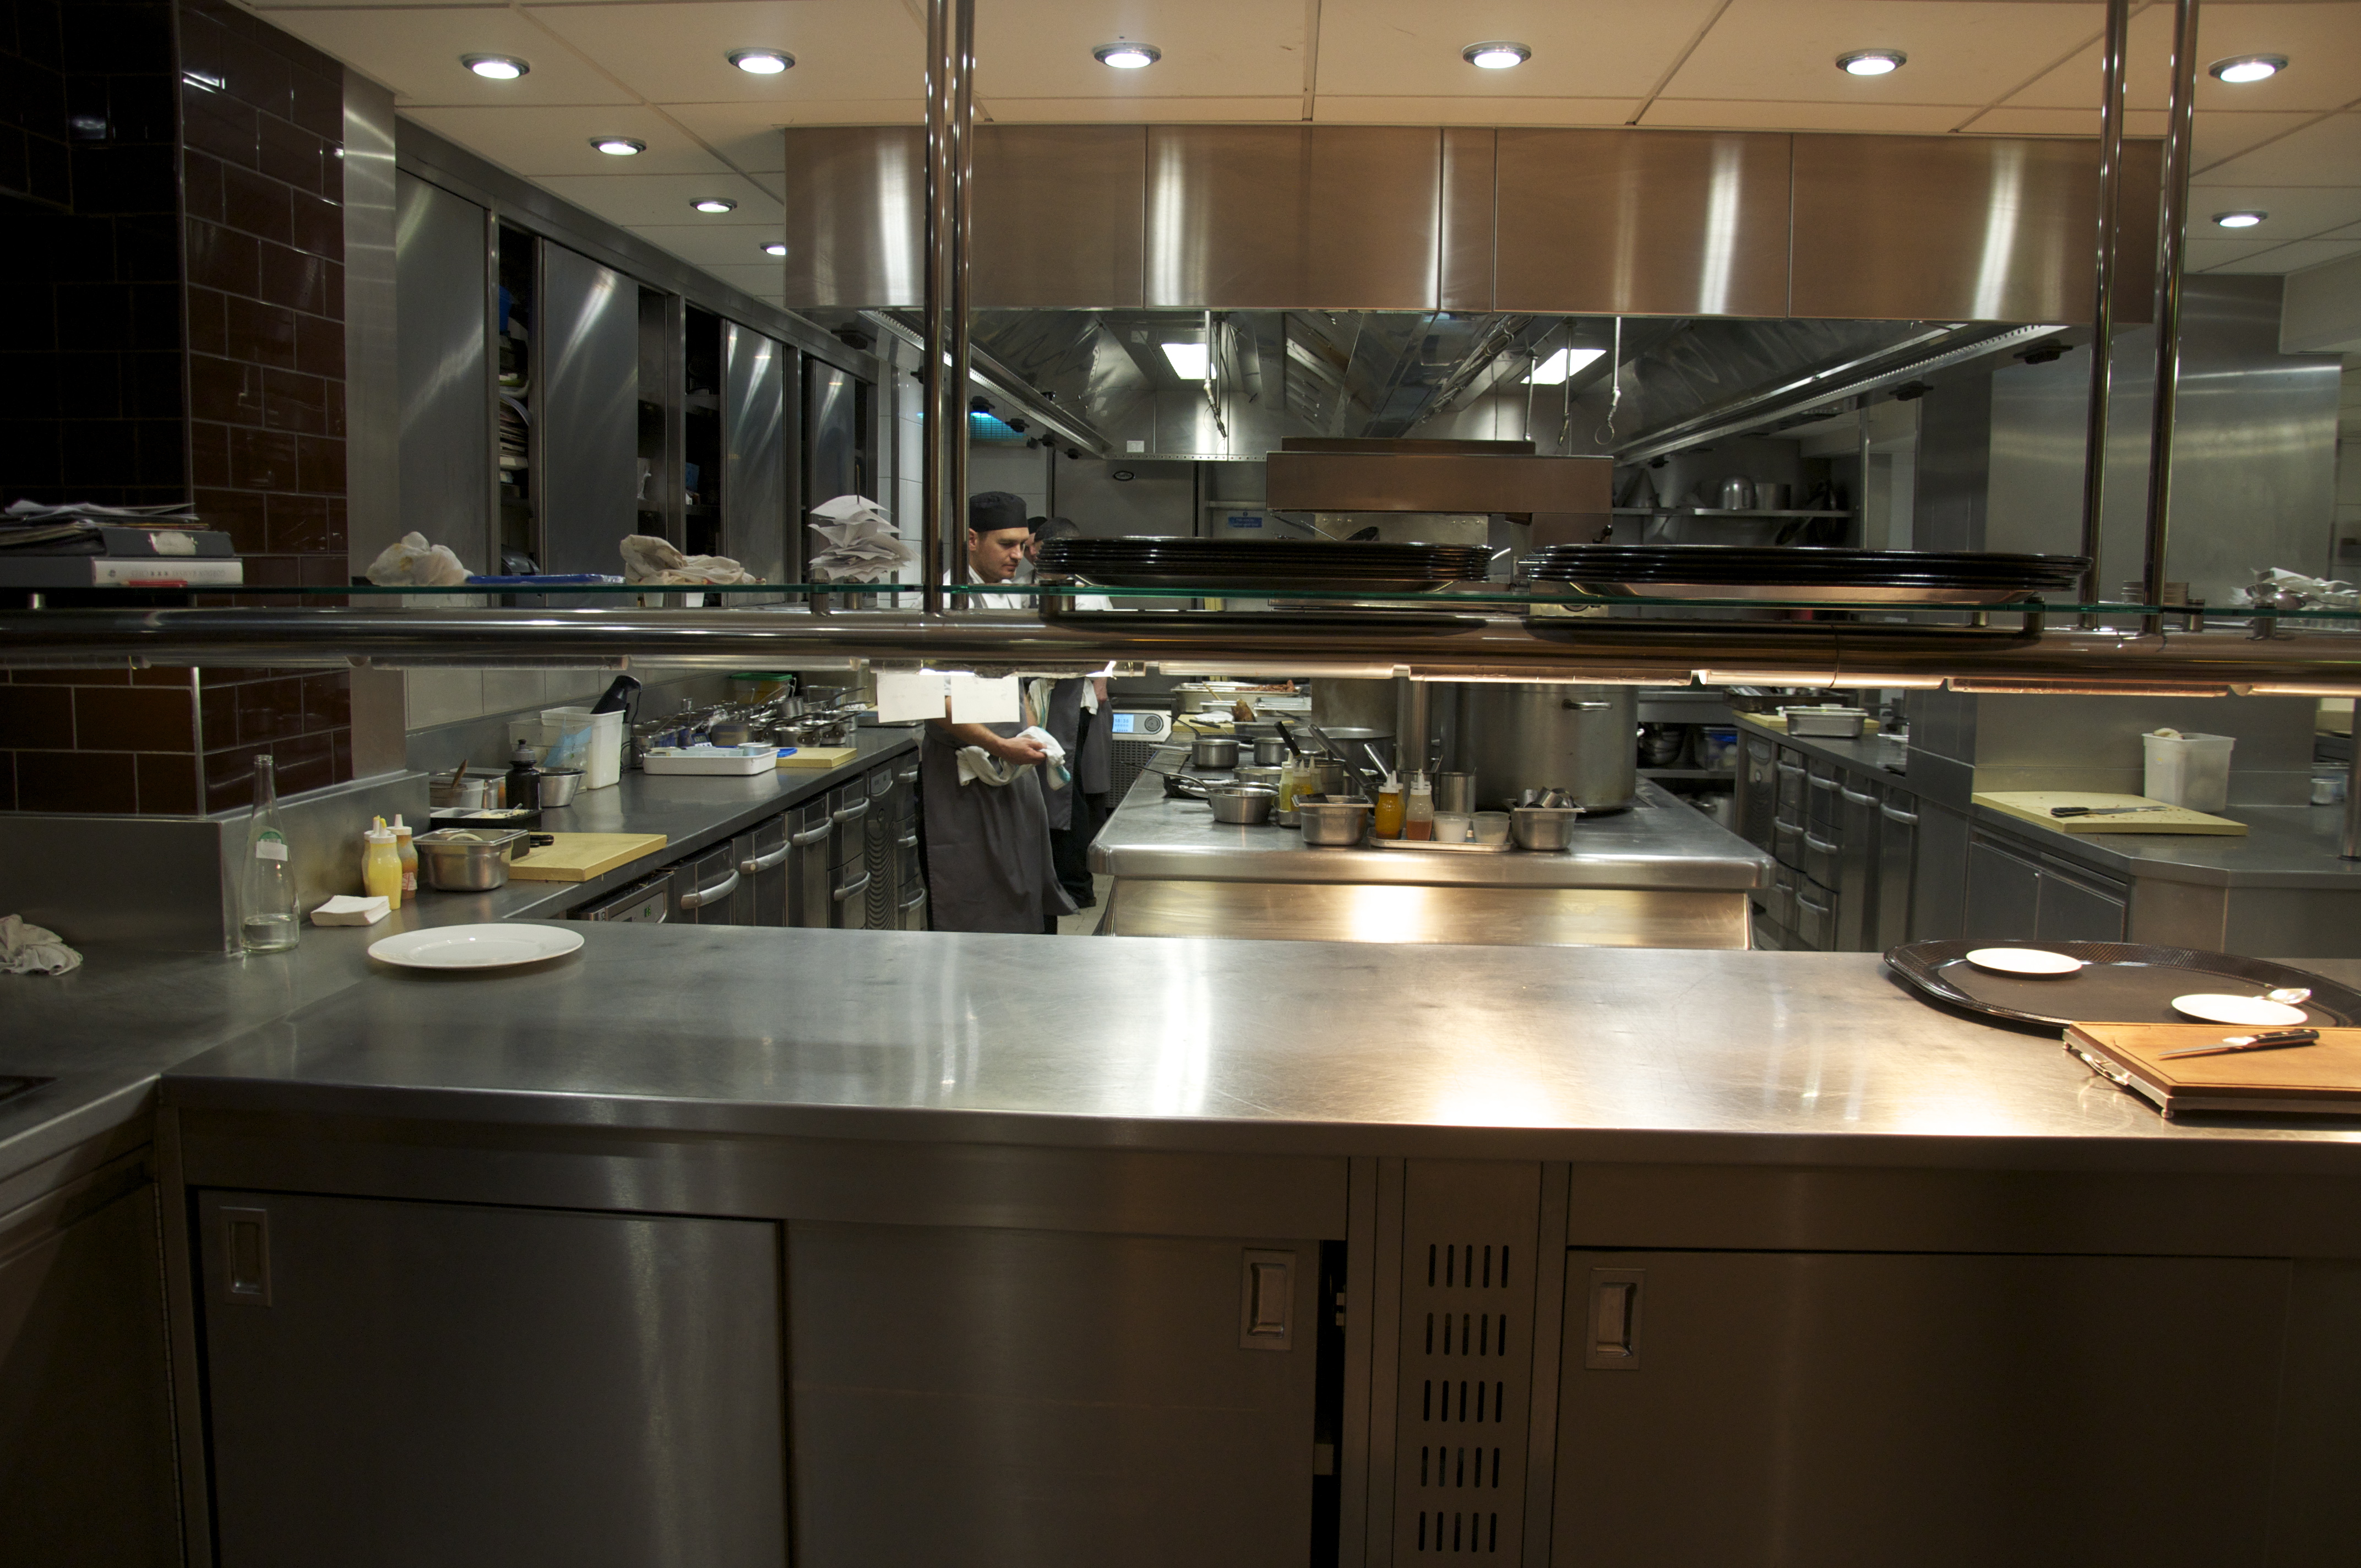 Restaurant Kitchen Restaurant Kitchen Layout Restaurant Floor Plan ...